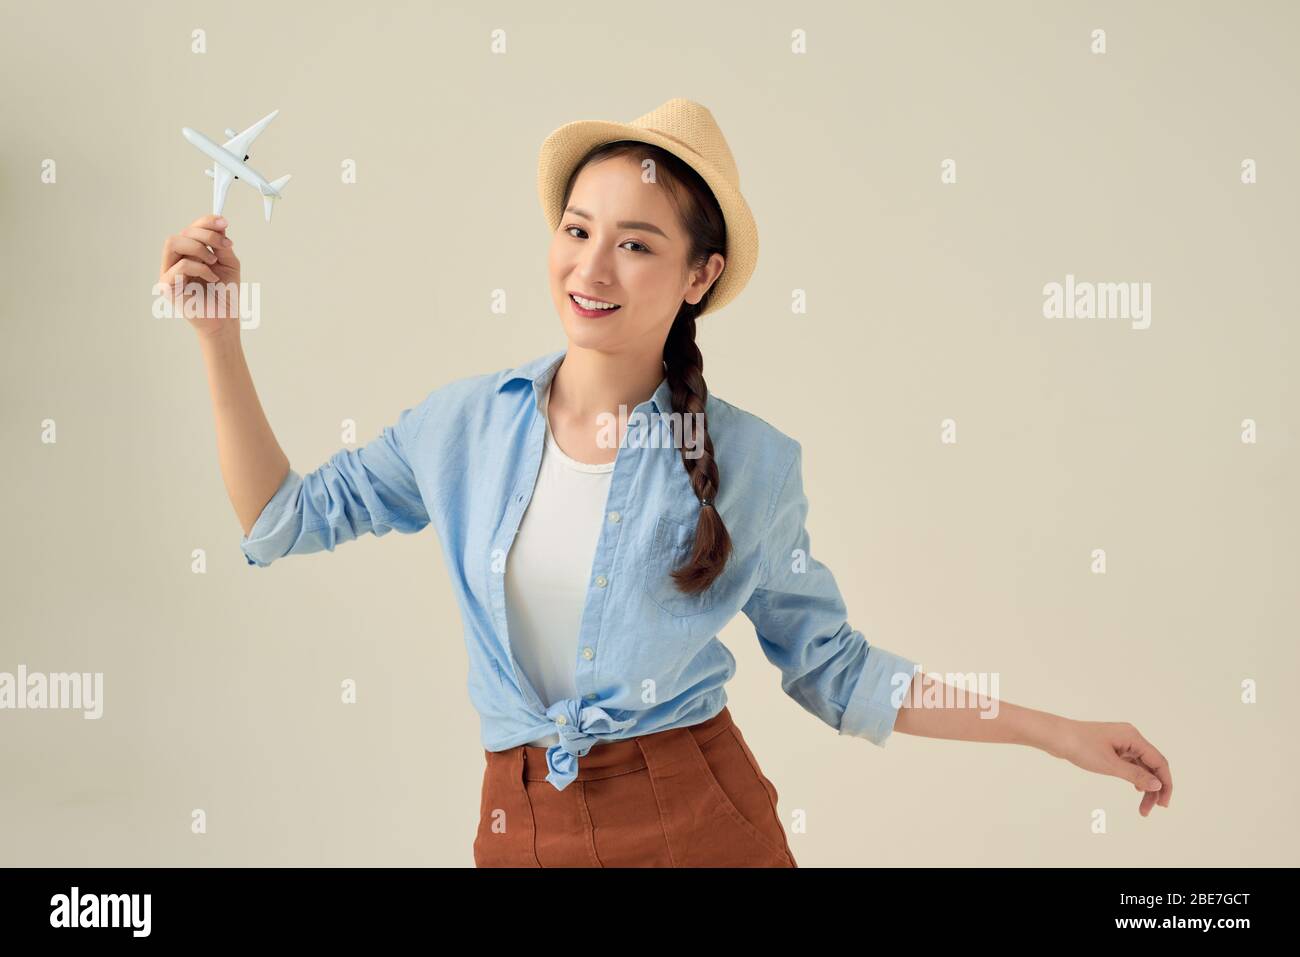 Portrait de la jeune femme heureuse tenant des avions à réaction sur fond blanc. Bannière publicitaire pour les entreprises de transport Banque D'Images